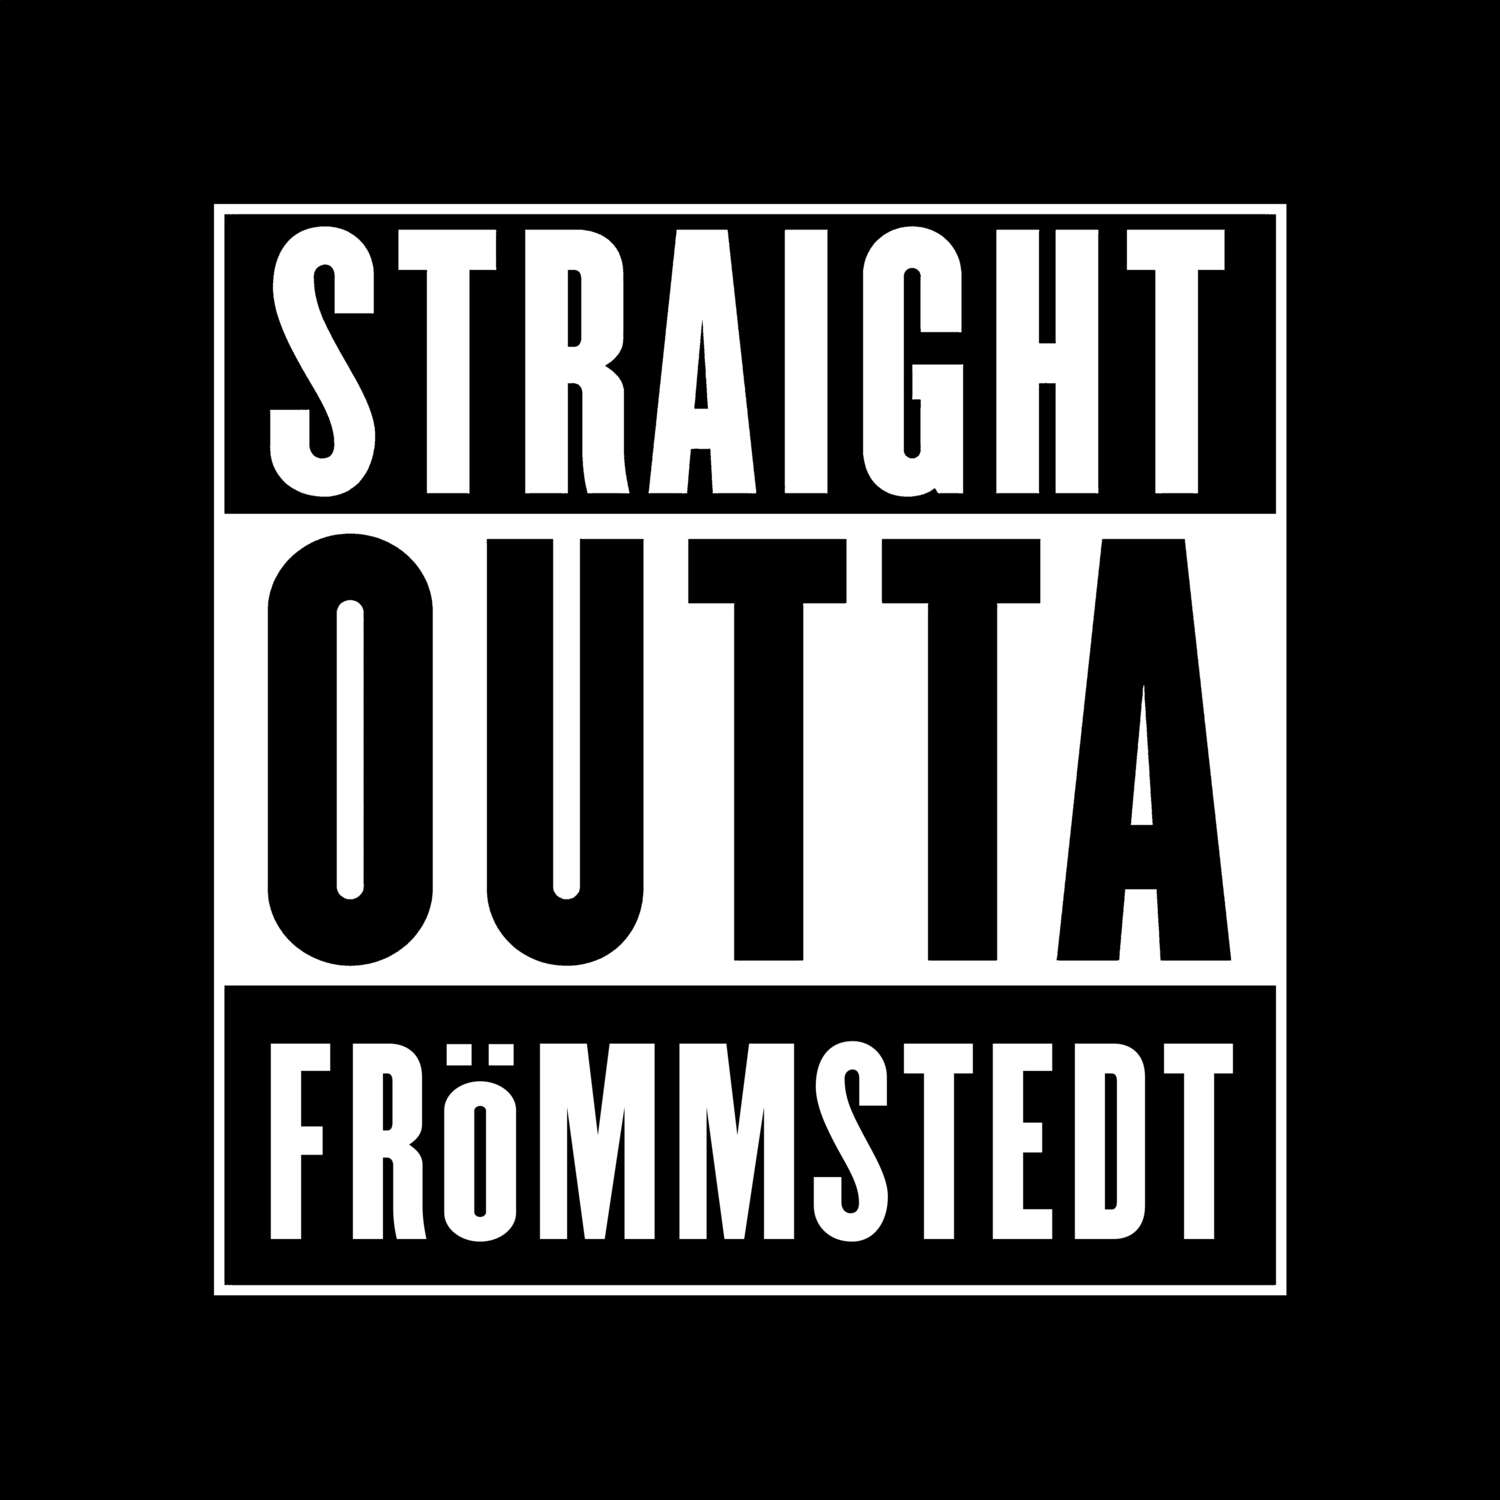 Frömmstedt T-Shirt »Straight Outta«